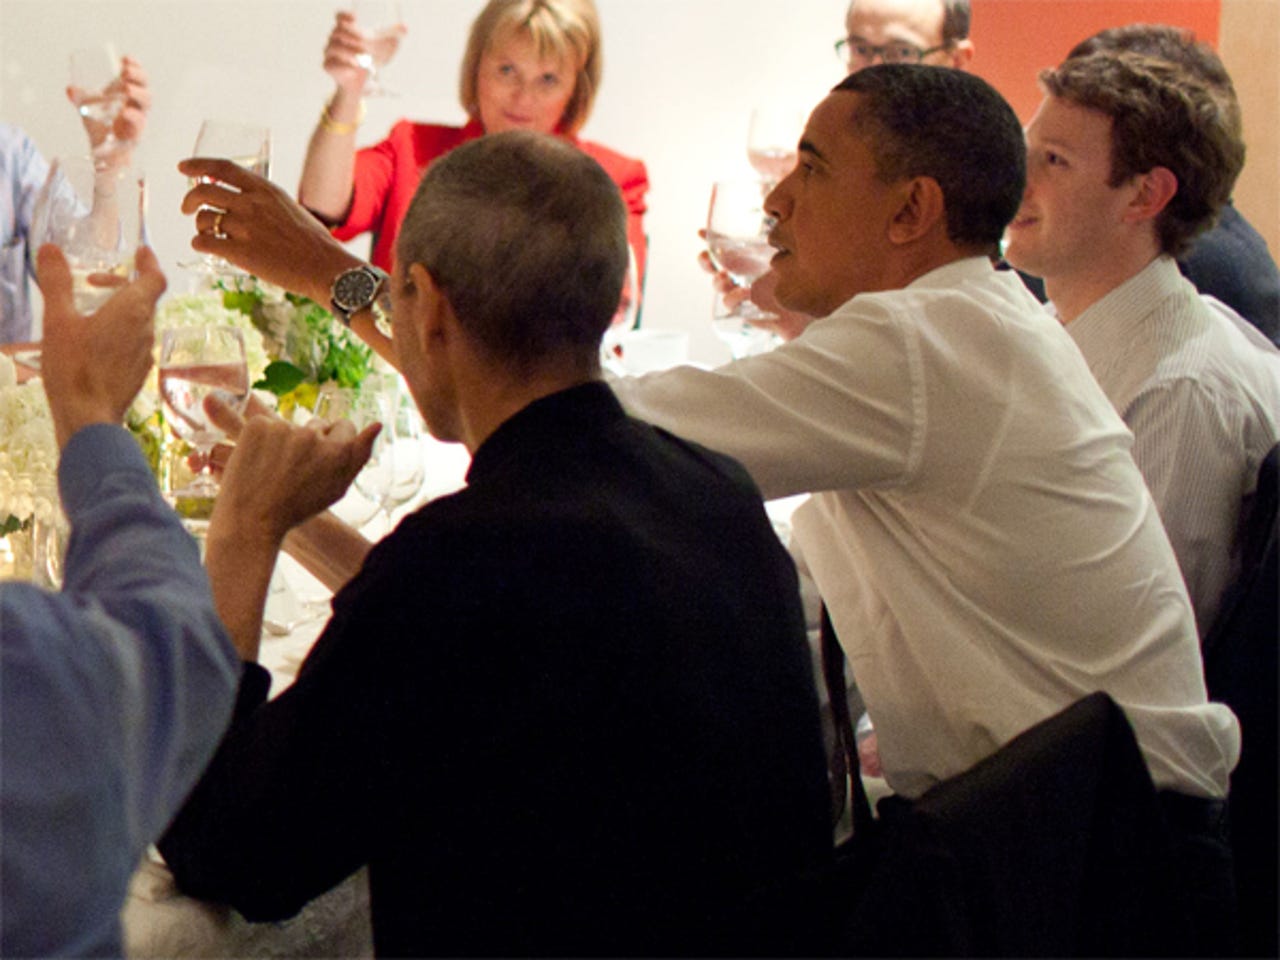 jobs-dinner-obama-2.jpg